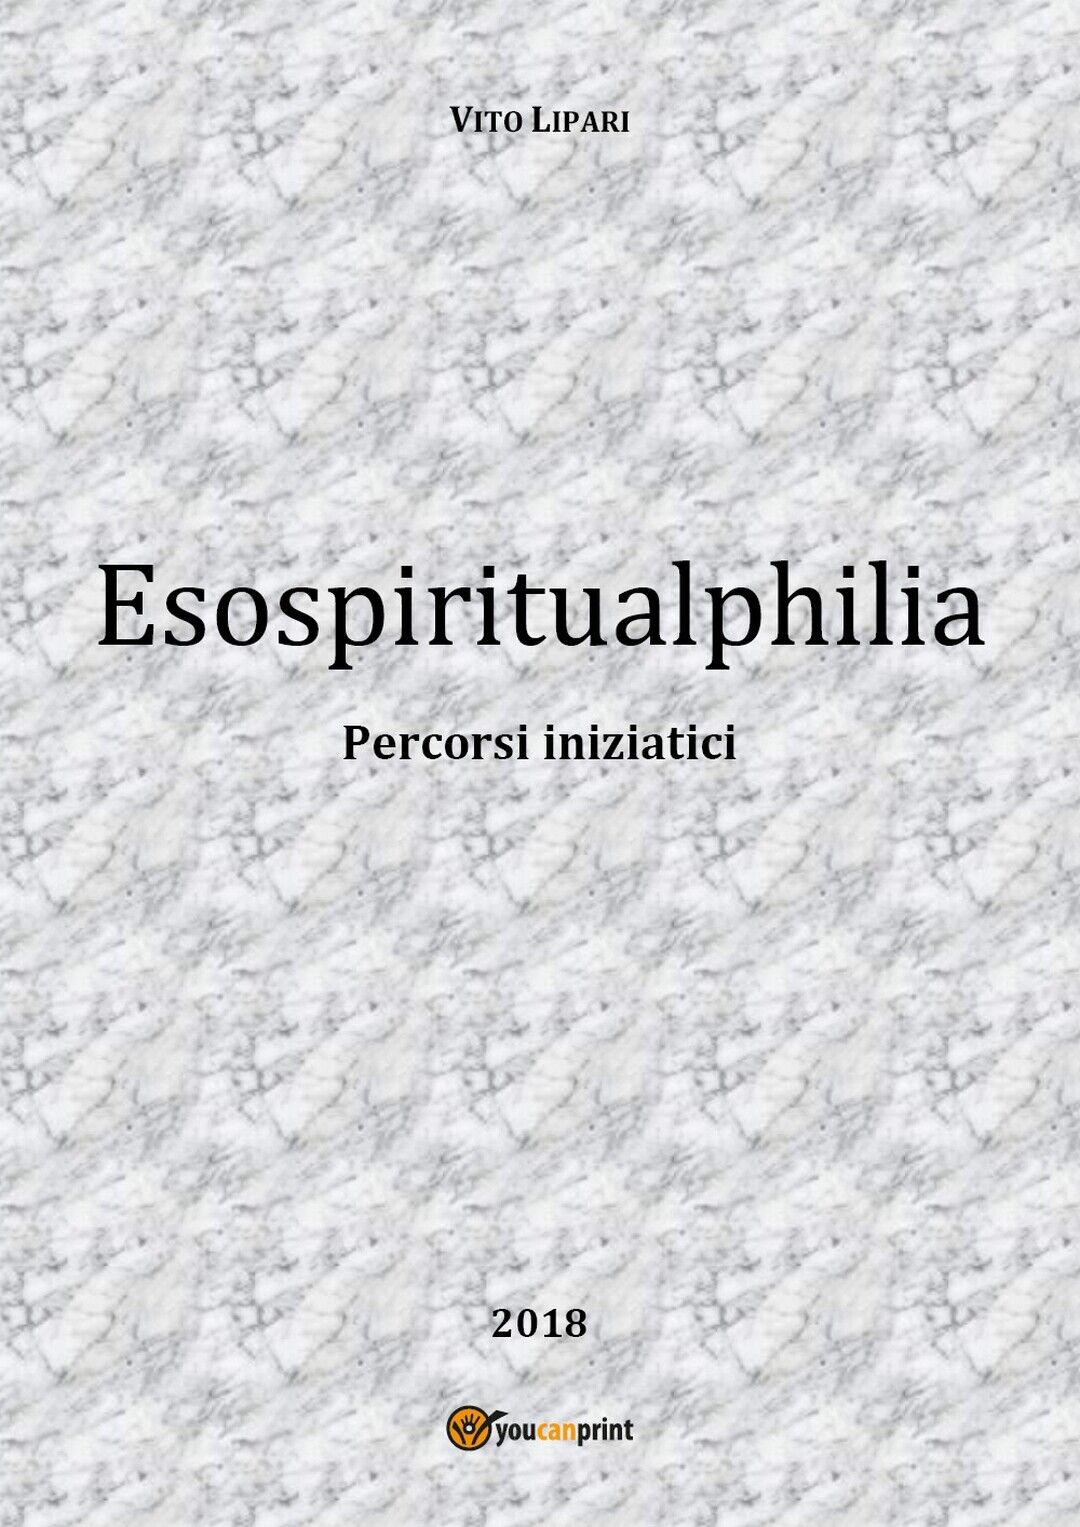 Esospiritualphilia  di Vito Lipari,  2018,  Youcanprint libro usato